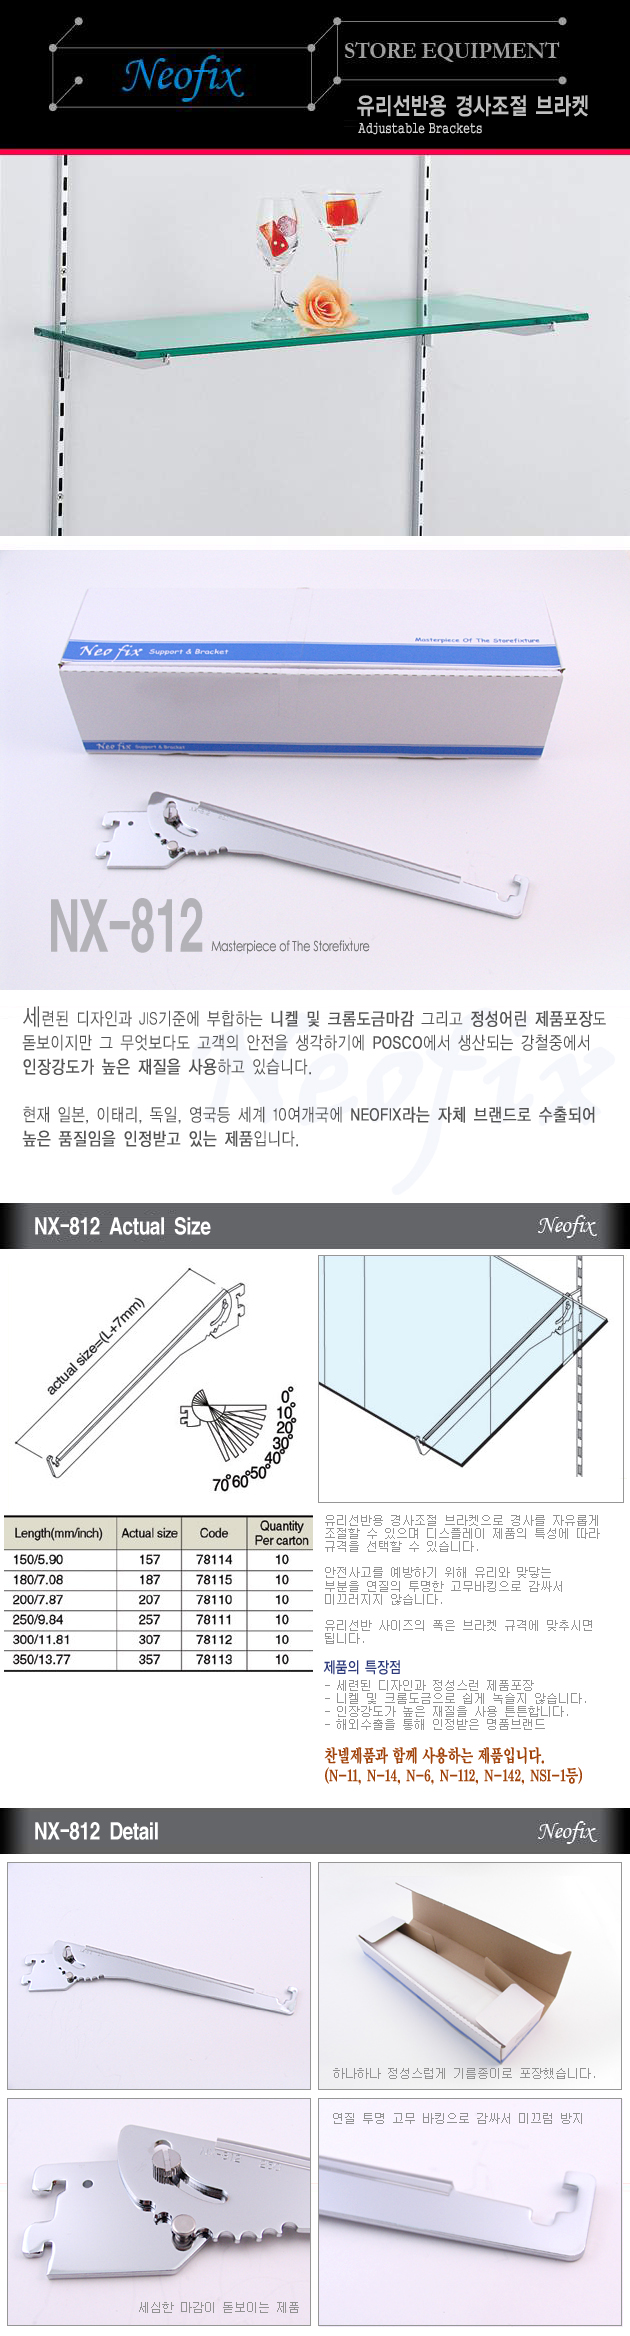 NX-812